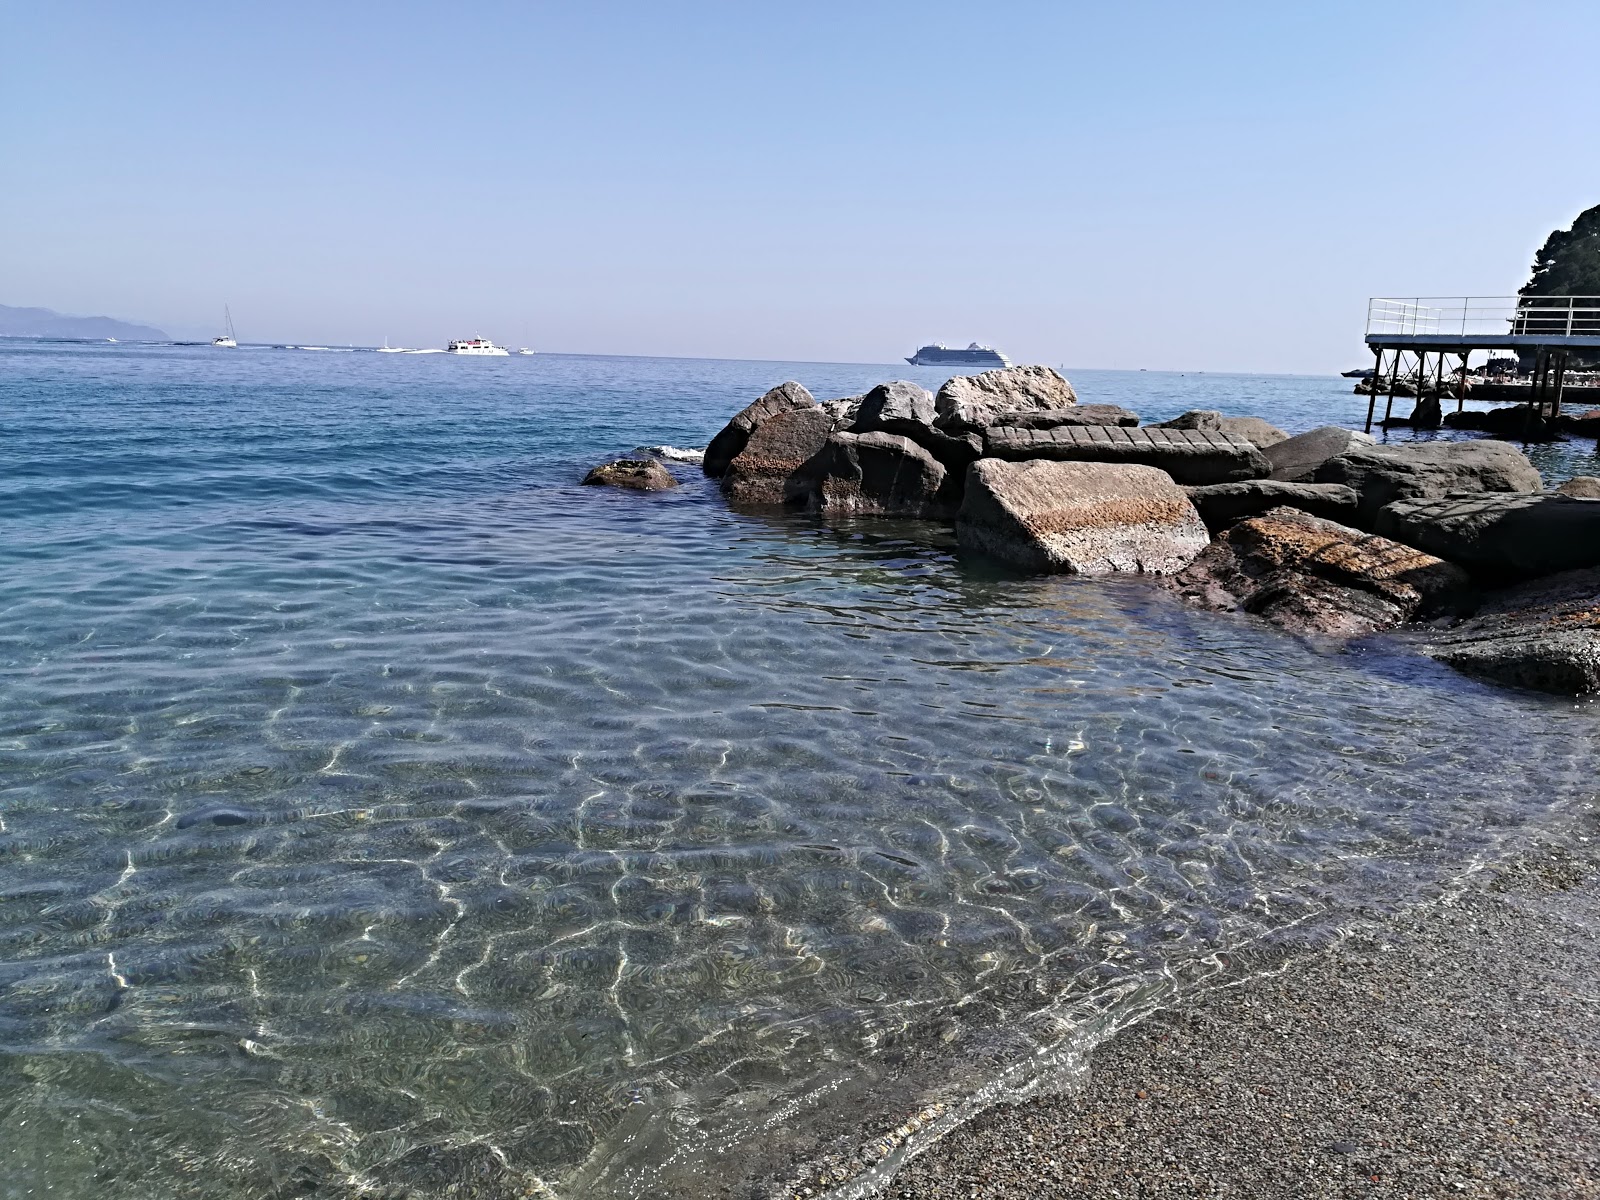 Spiaggia Regina Elena II的照片 背靠悬崖